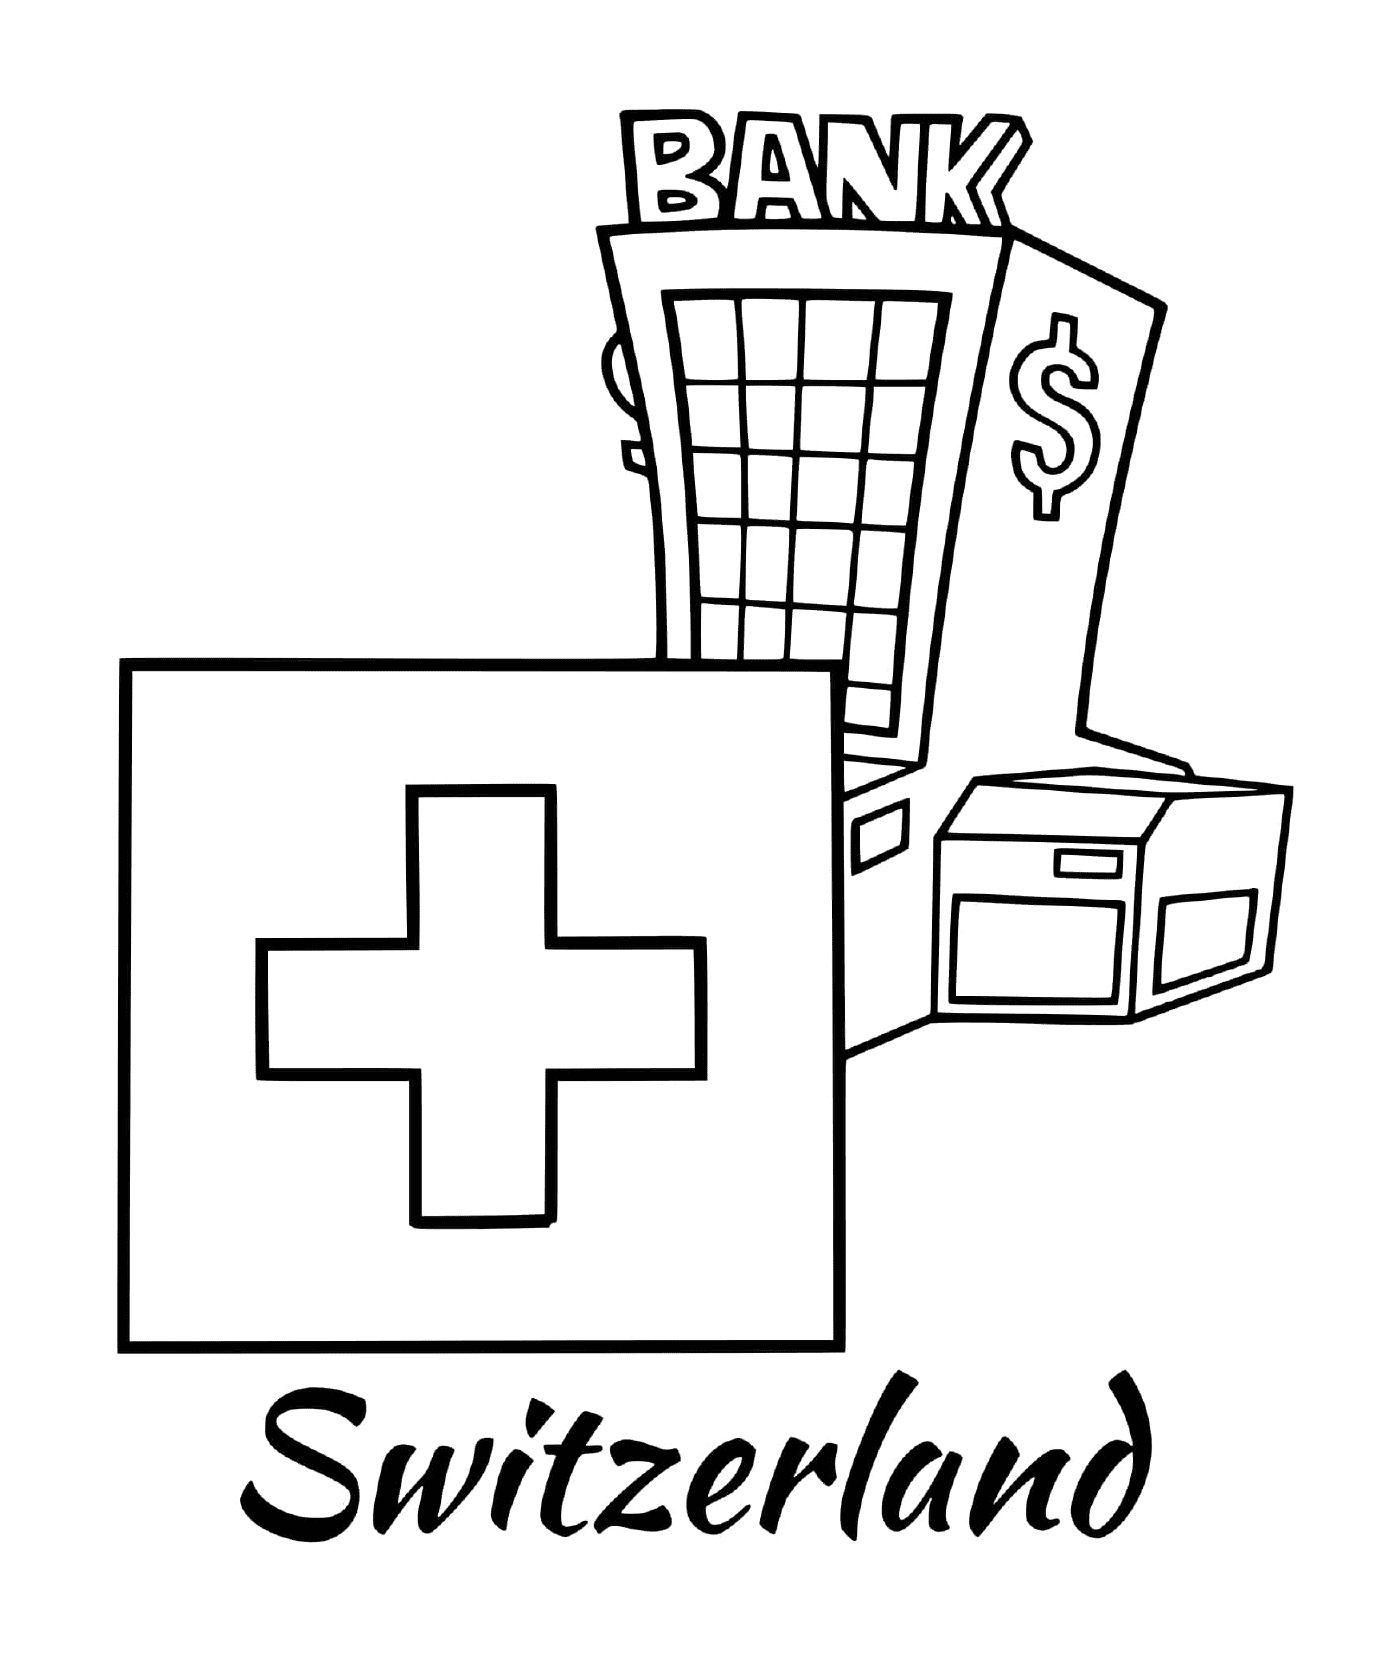  Bandeira da Suíça com um banco 